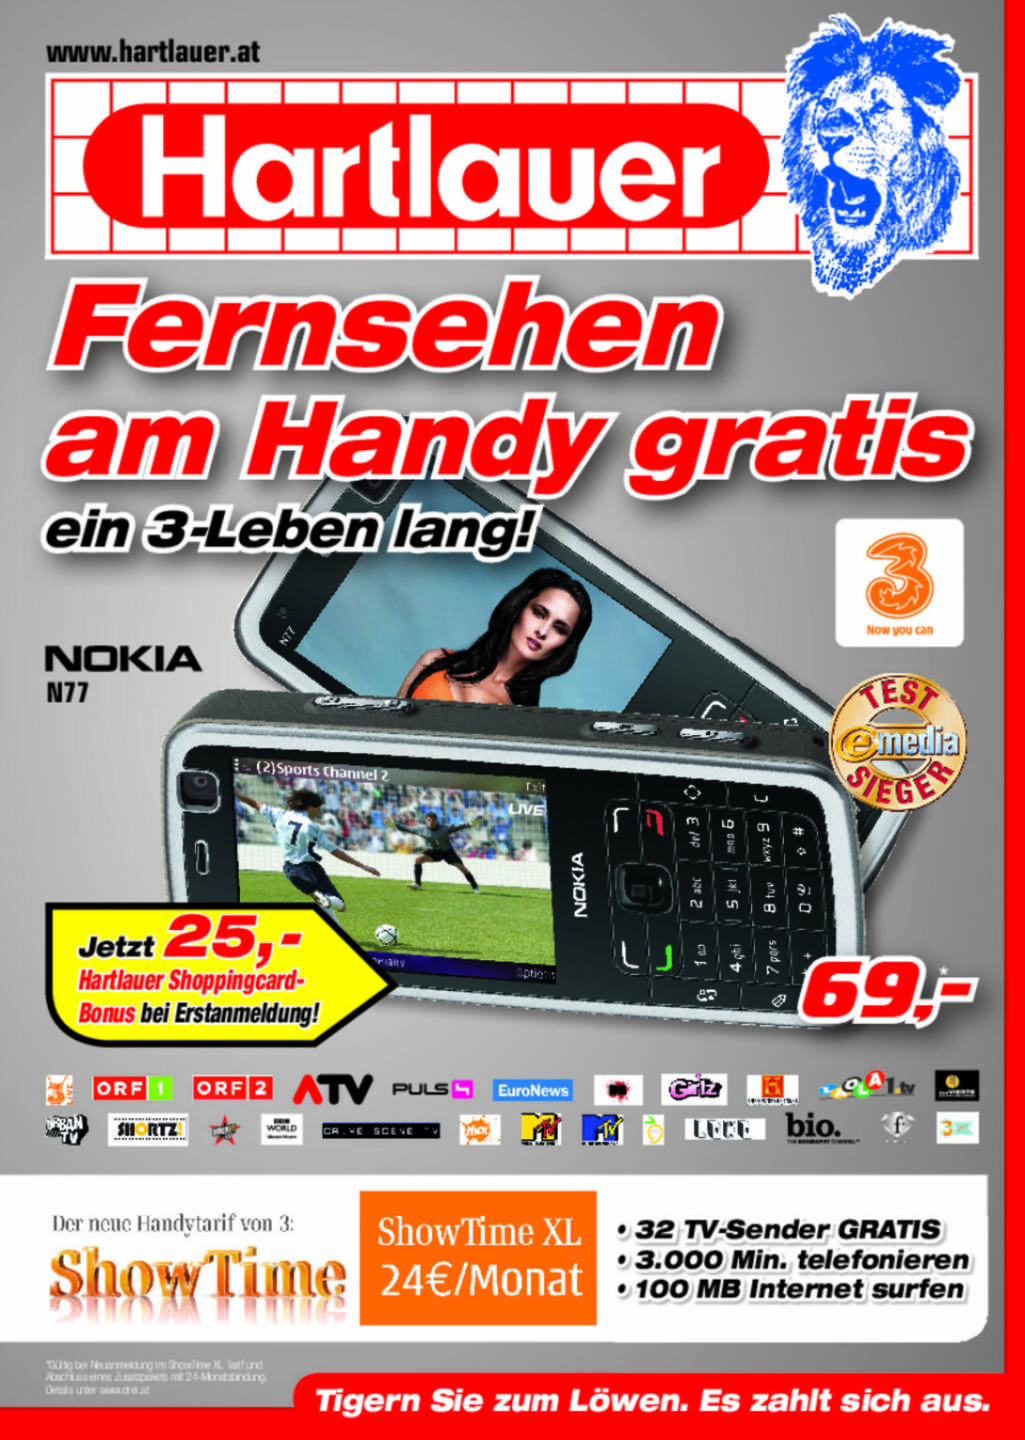 Hartlauer - Sport Woche Anzeigen Euro 2008